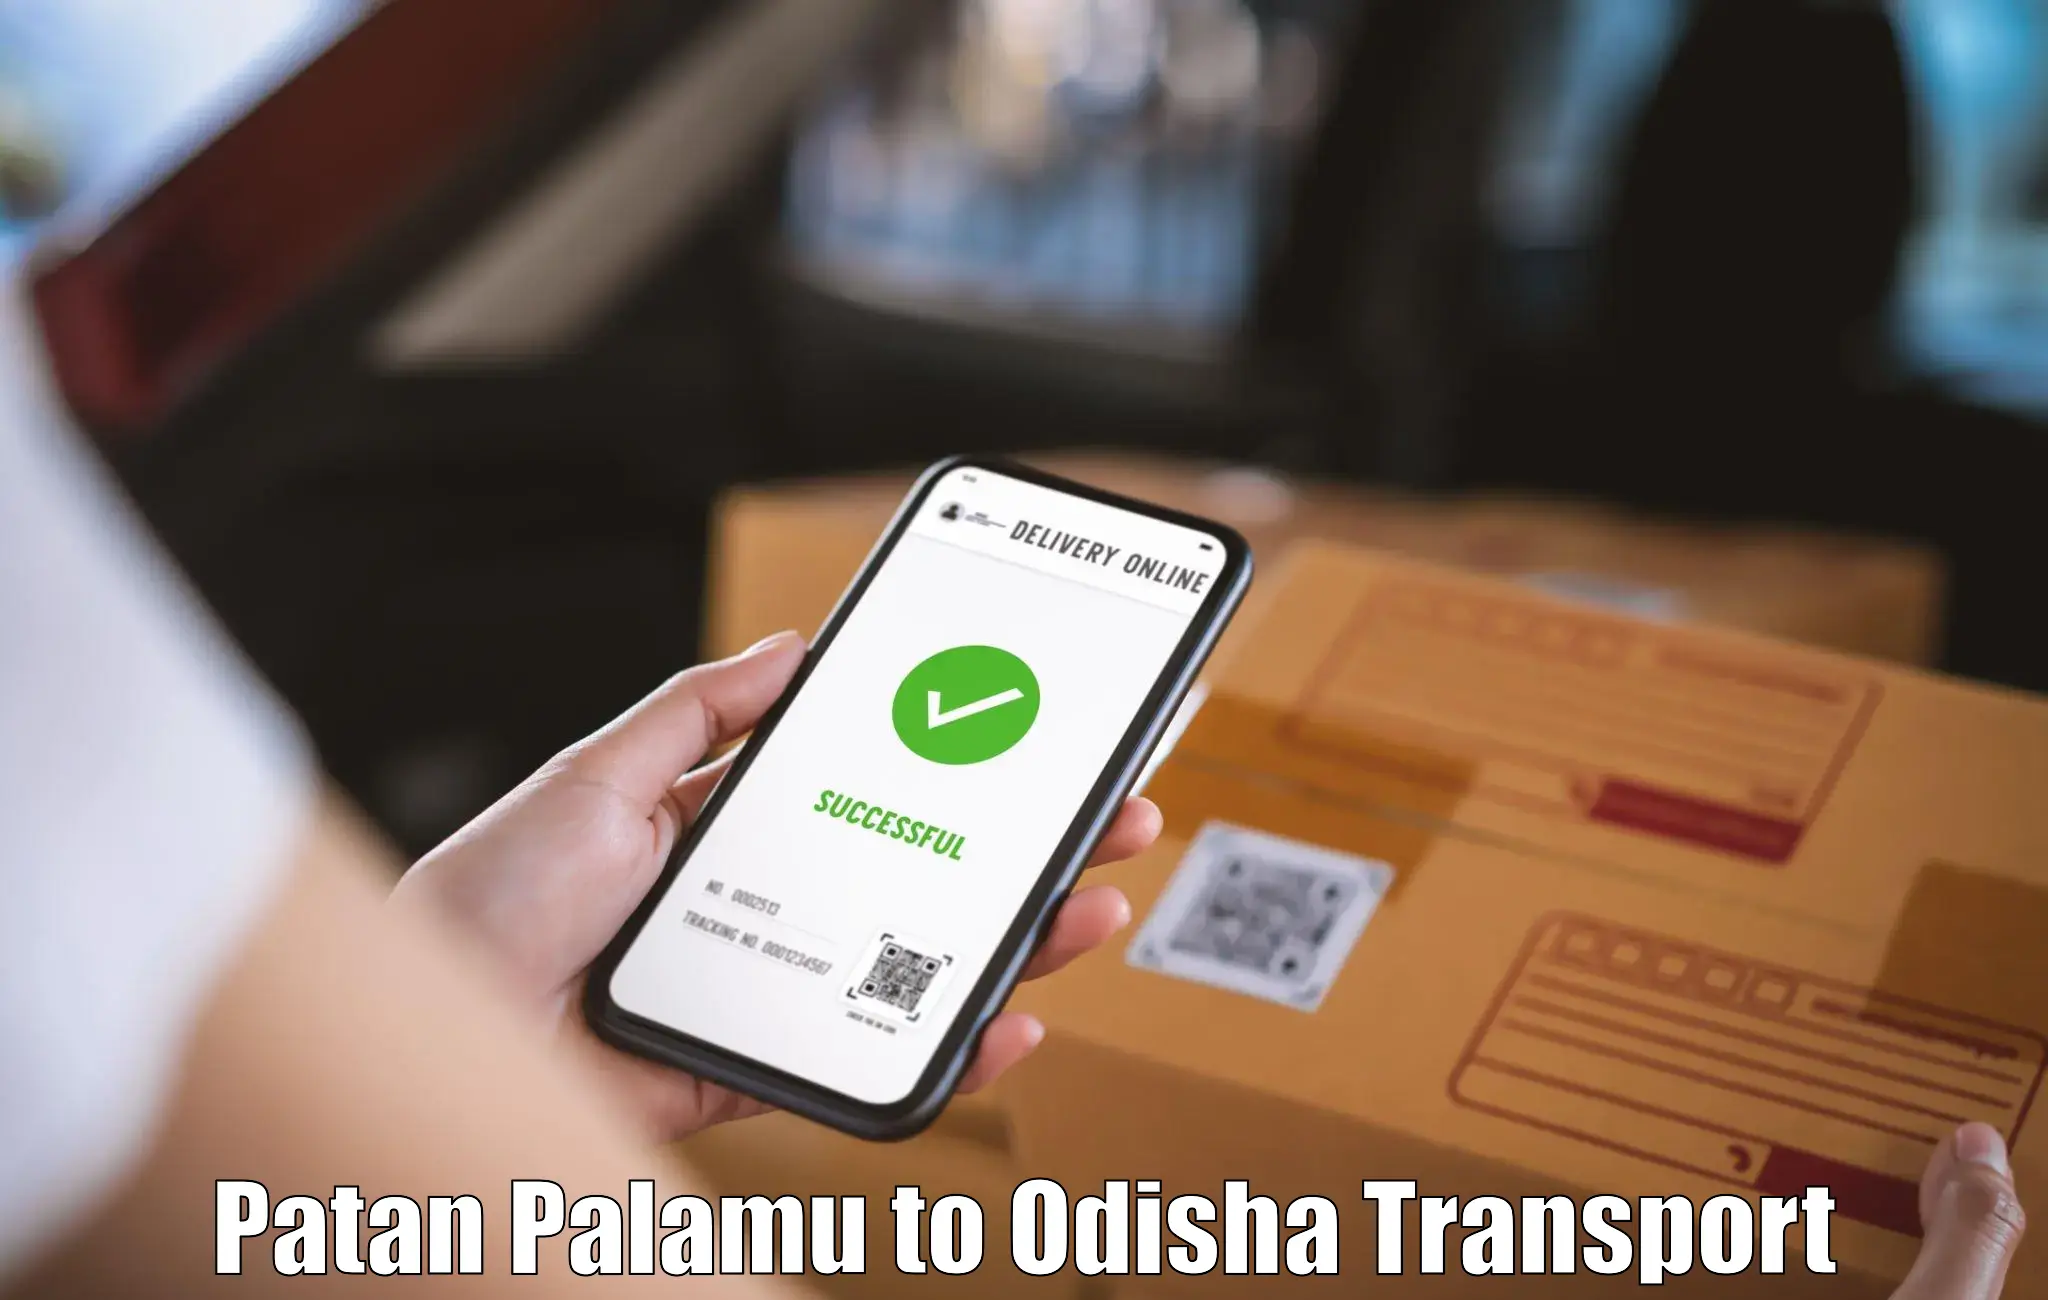 Online transport Patan Palamu to Muribahal